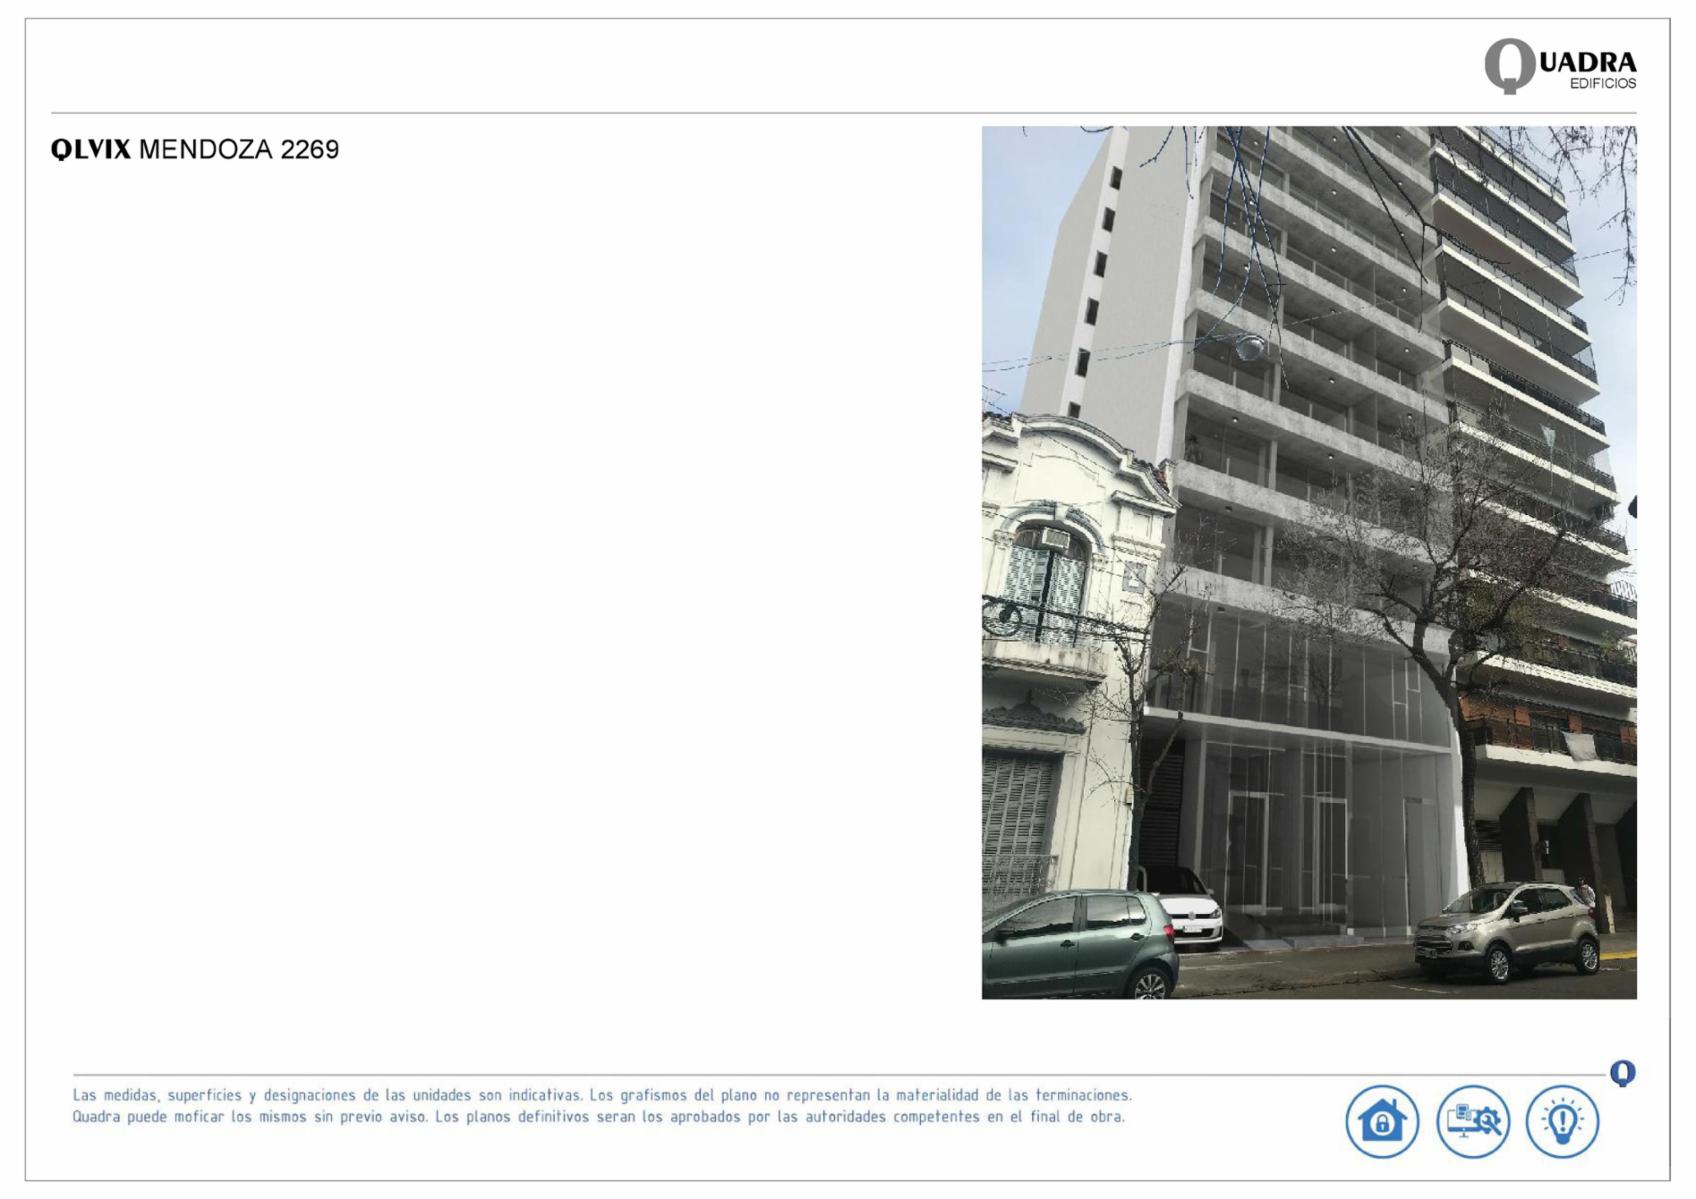 Rosario: Mendoza 2267 - Edificio Quadra LIX - Monoambientes de 39,90 m2 frente o contrafrente, Santa